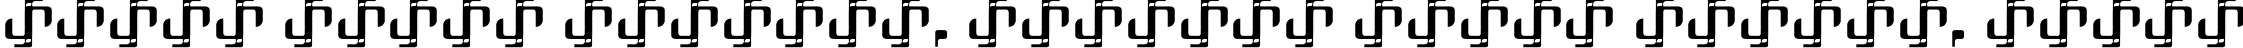 Пример написания шрифтом One-Eighty Regular текста на белорусском